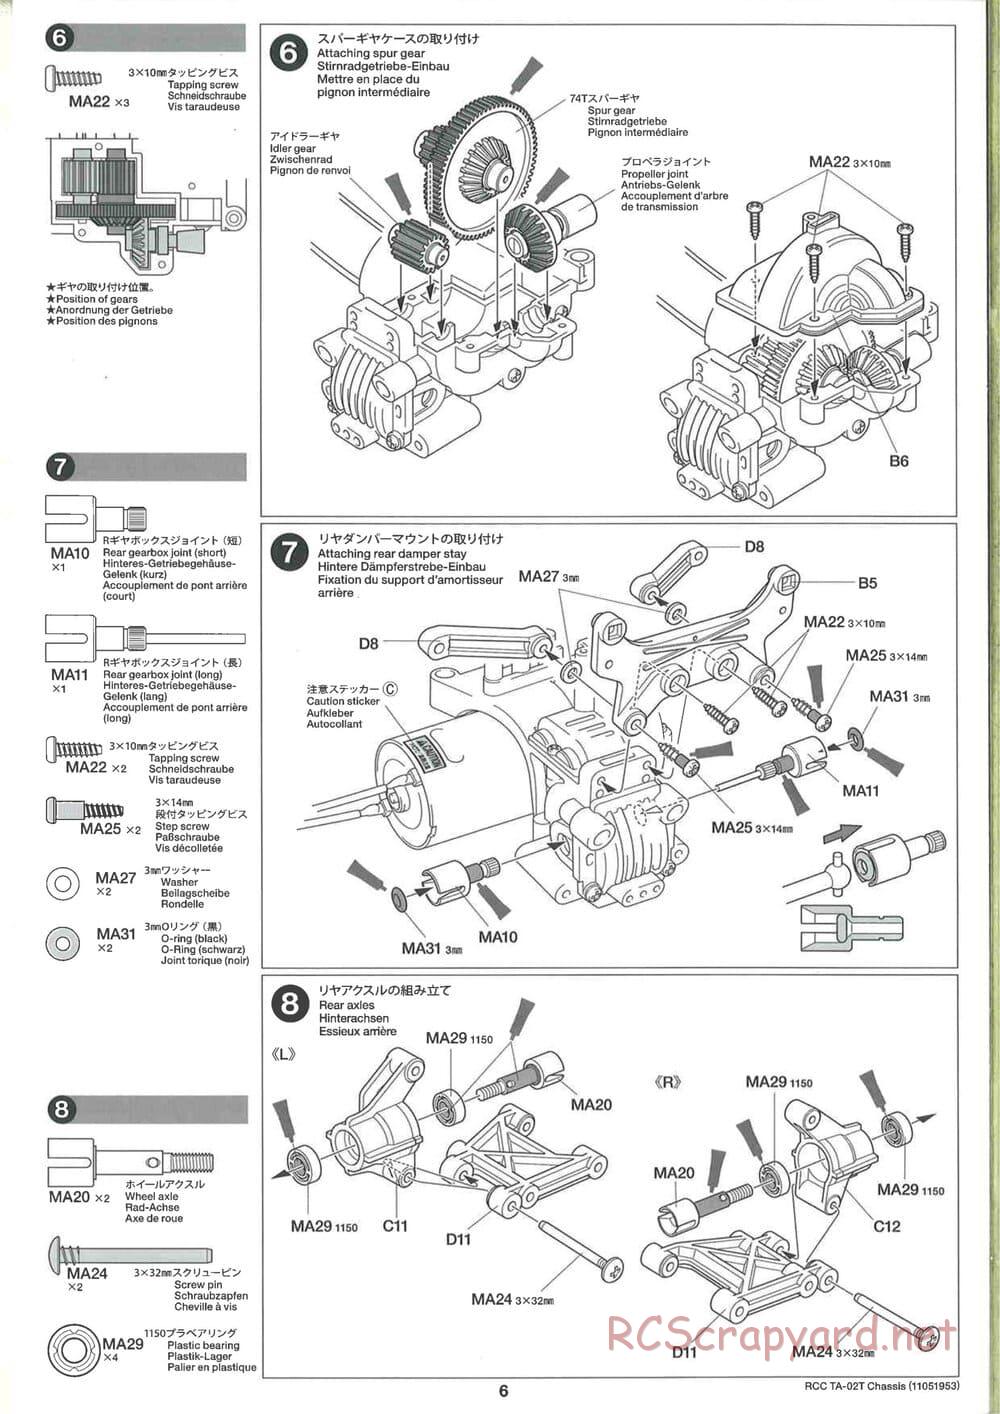 Tamiya - TA-02T Chassis - Manual - Page 6